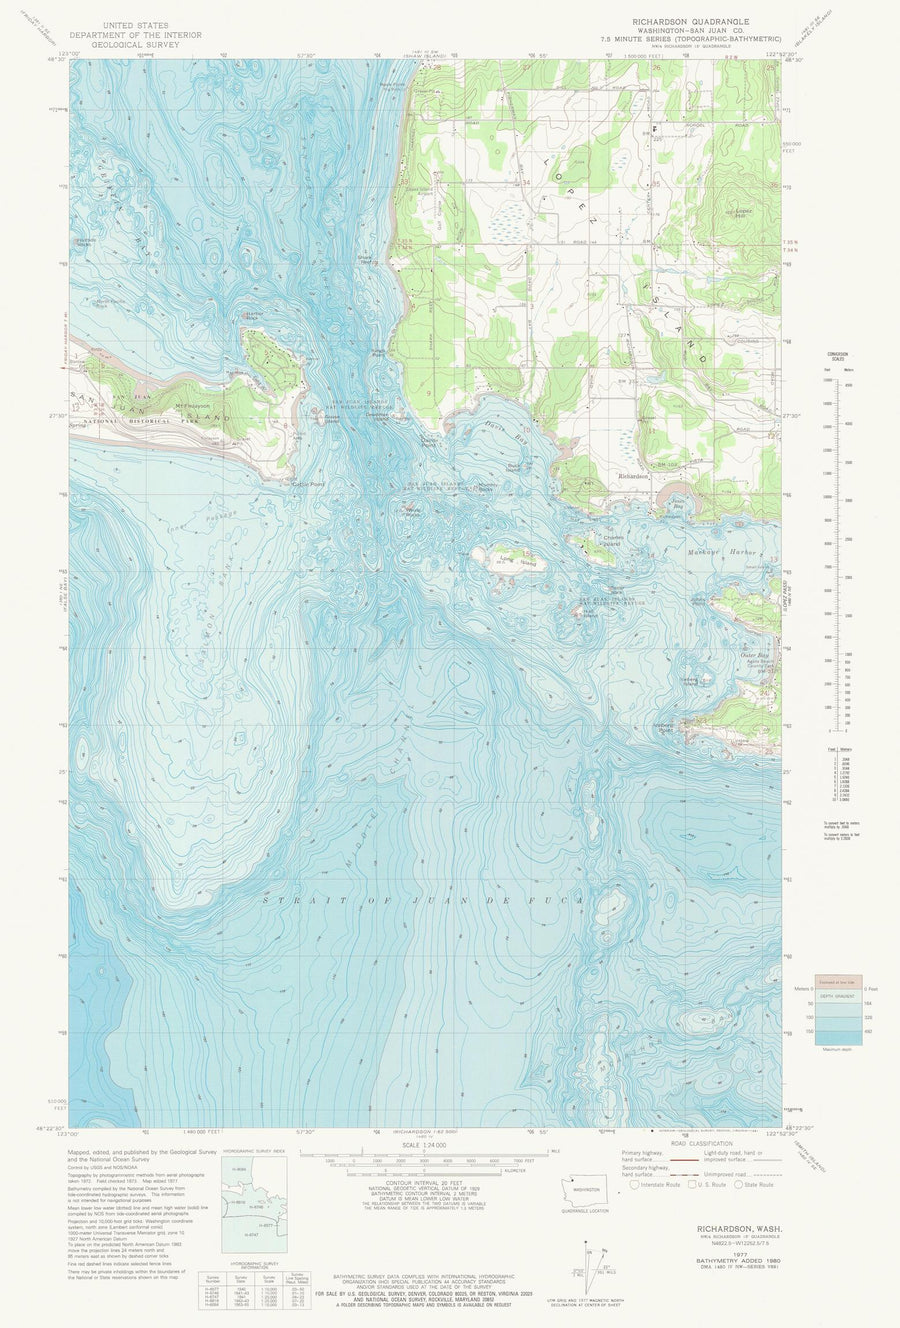 Richardson WA Map - 1977